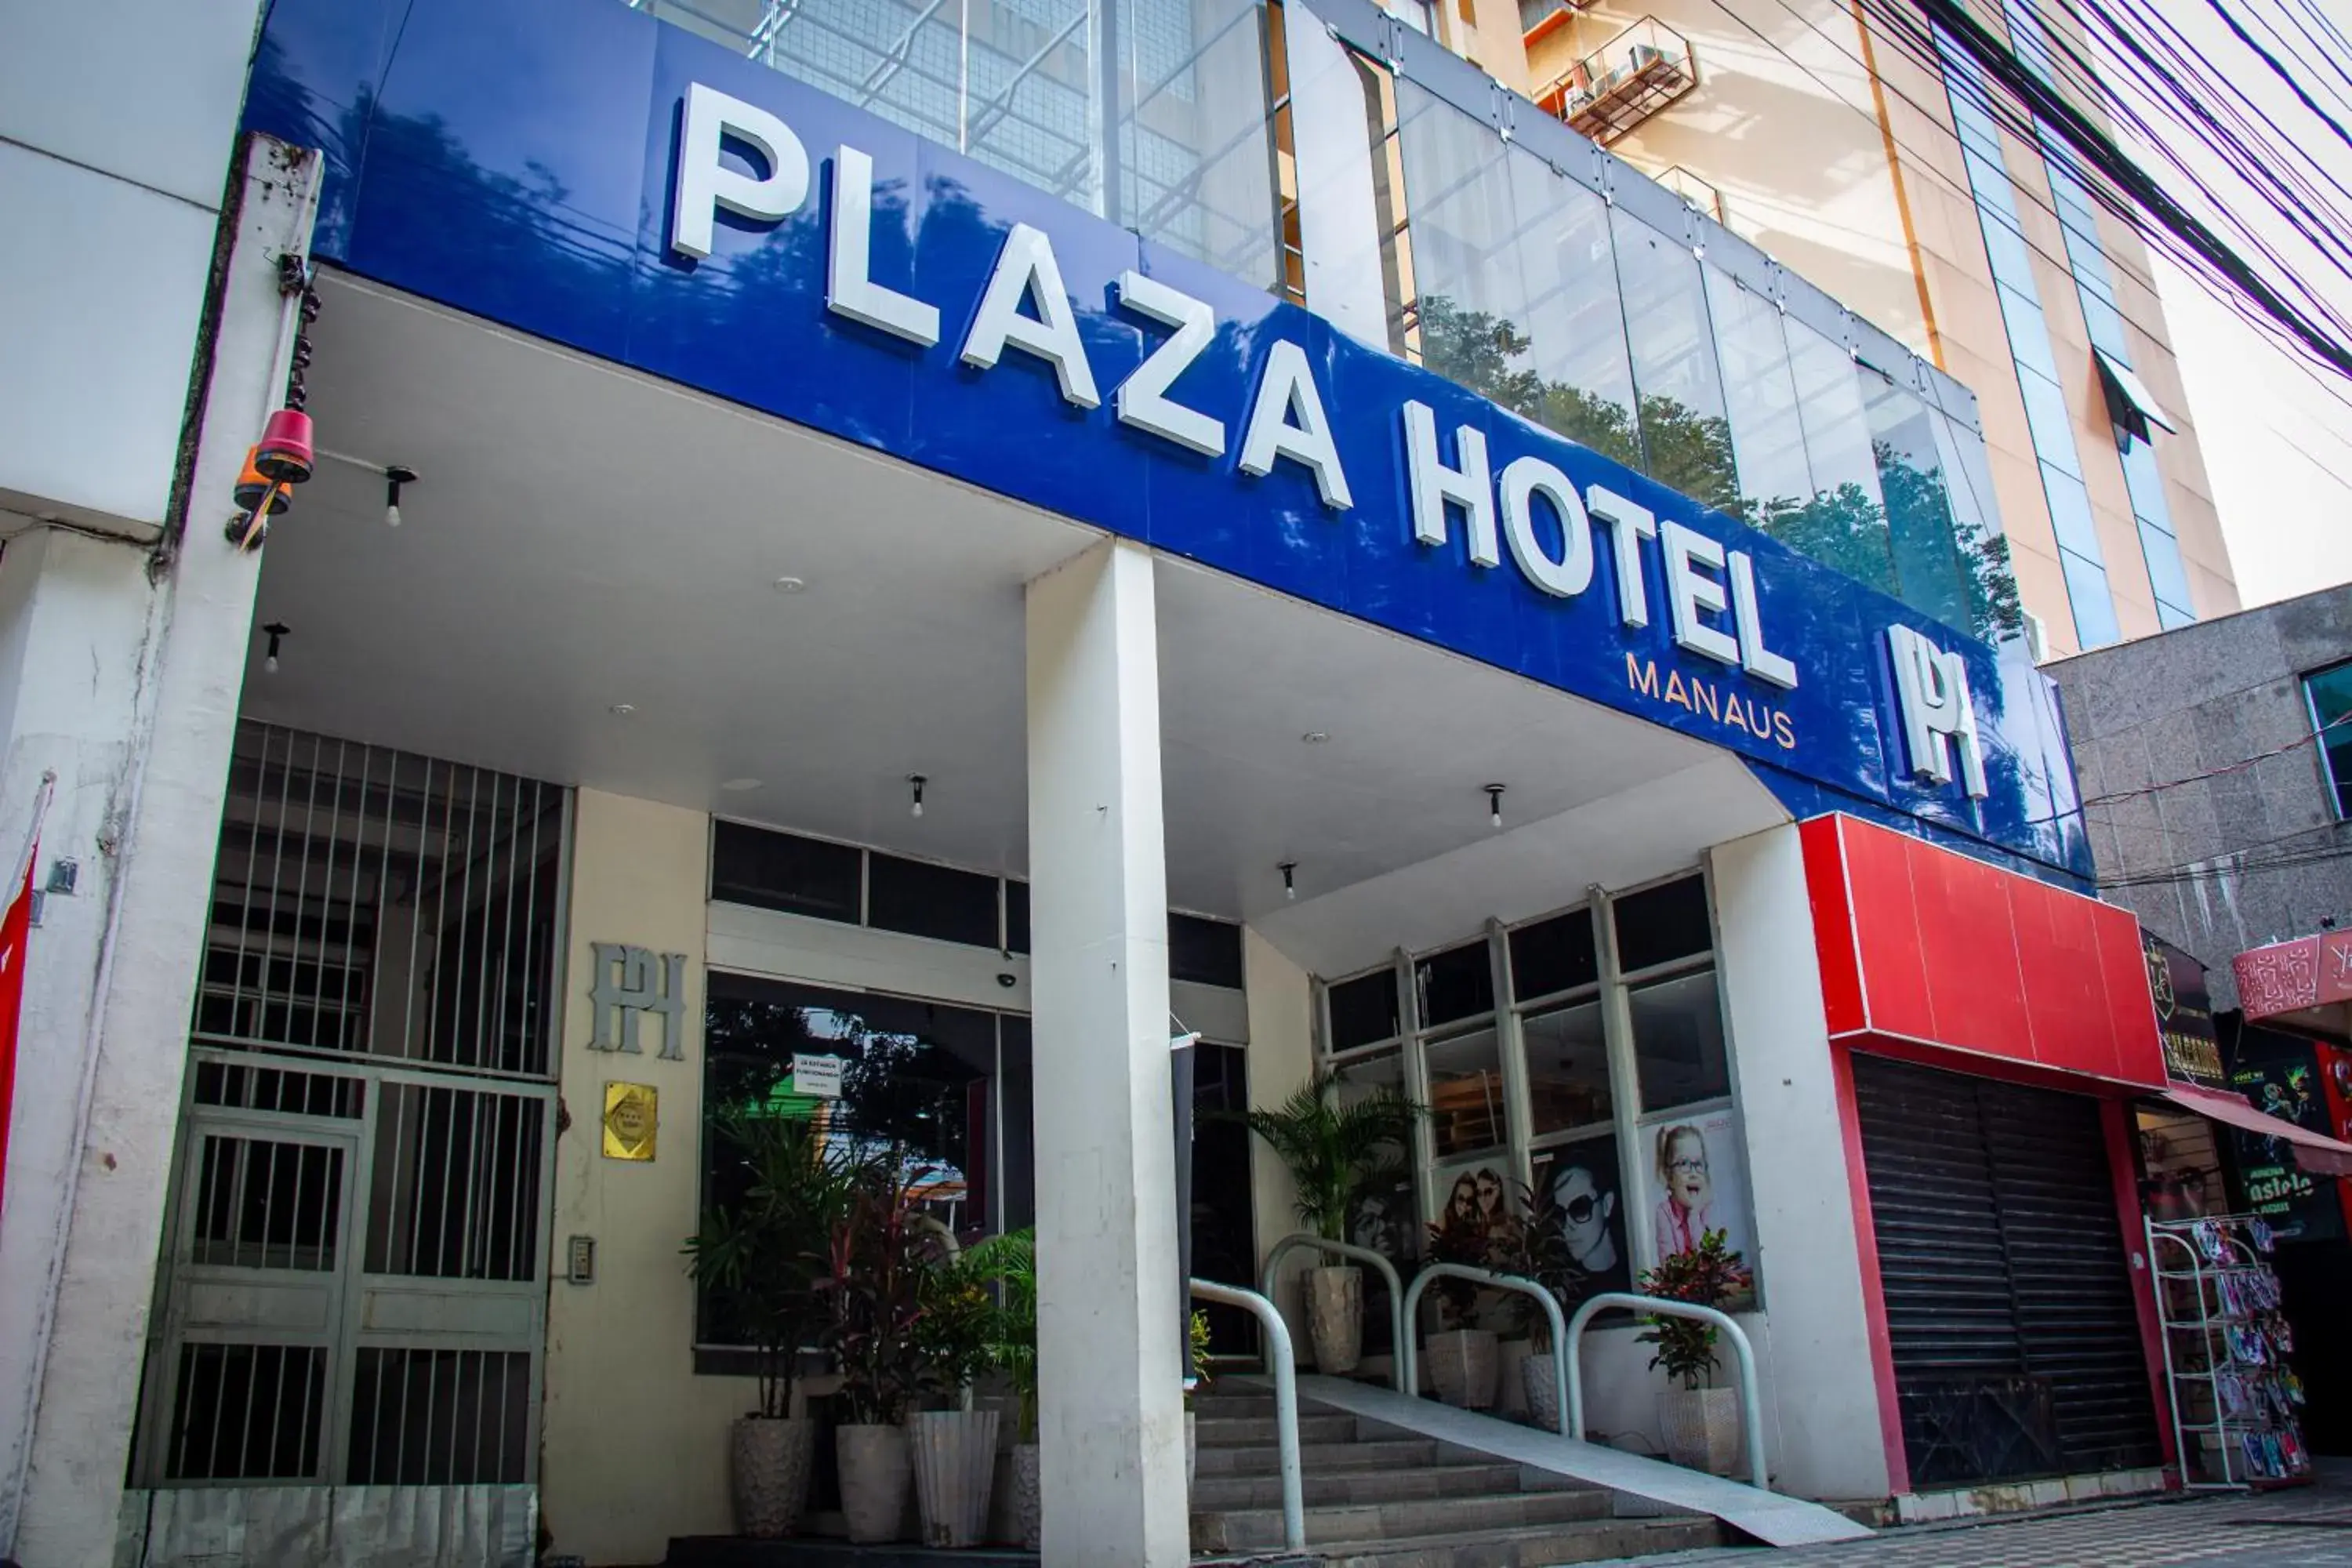 Facade/entrance in Plaza Hotel Manaus